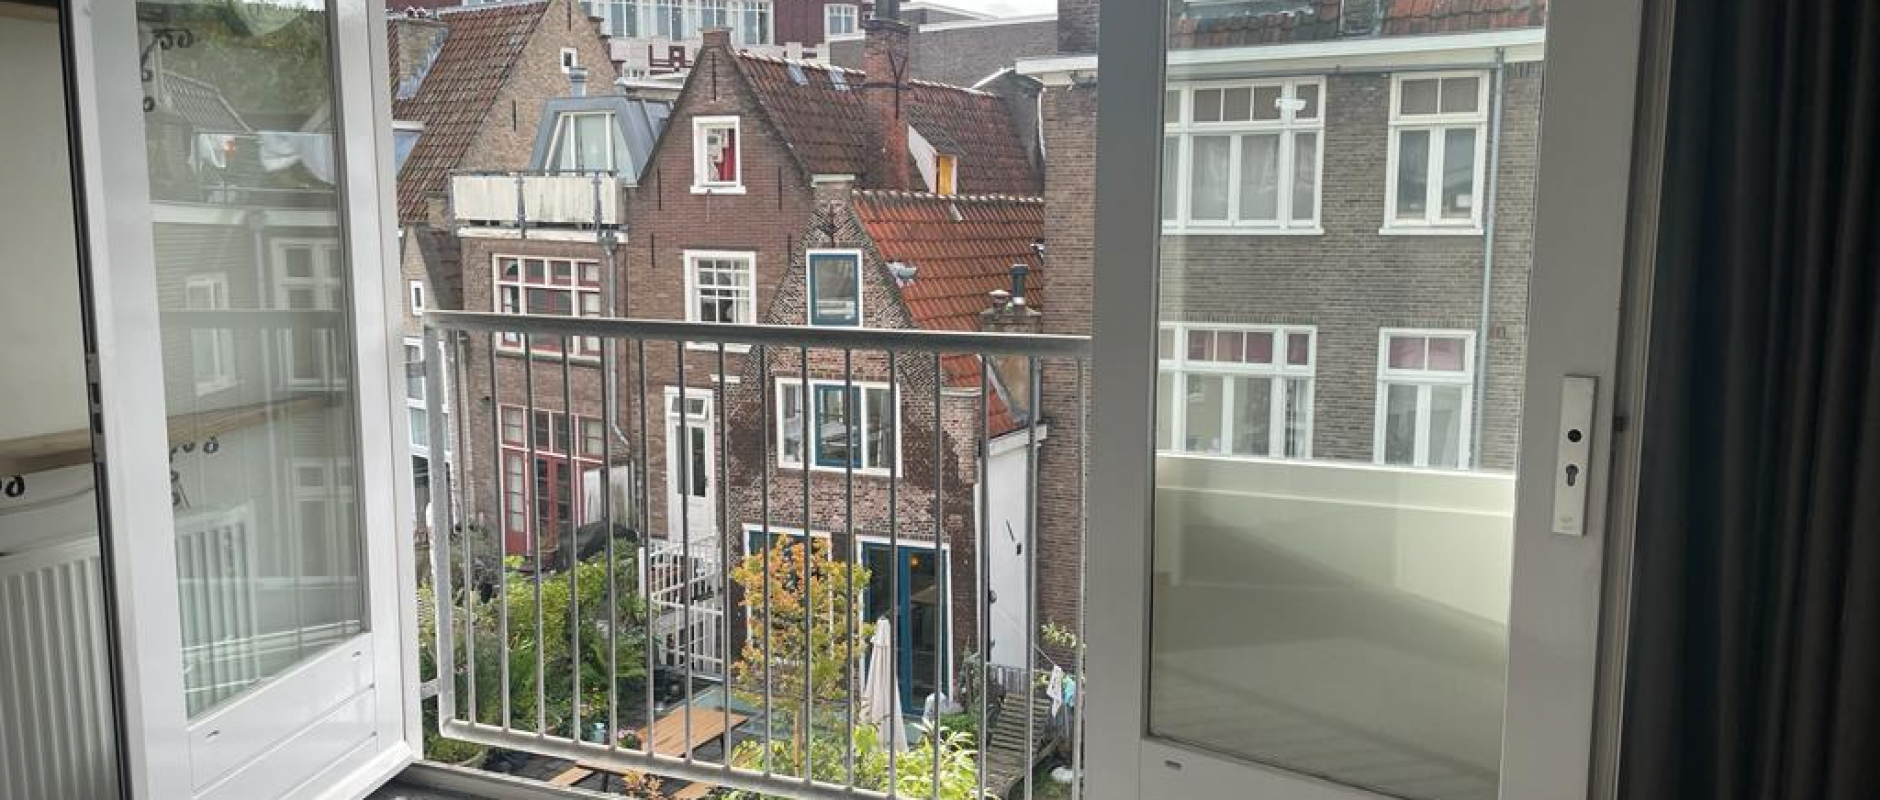 Woning te koop aan de Nieuwe Nieuwstraat 39 te Amsterdam